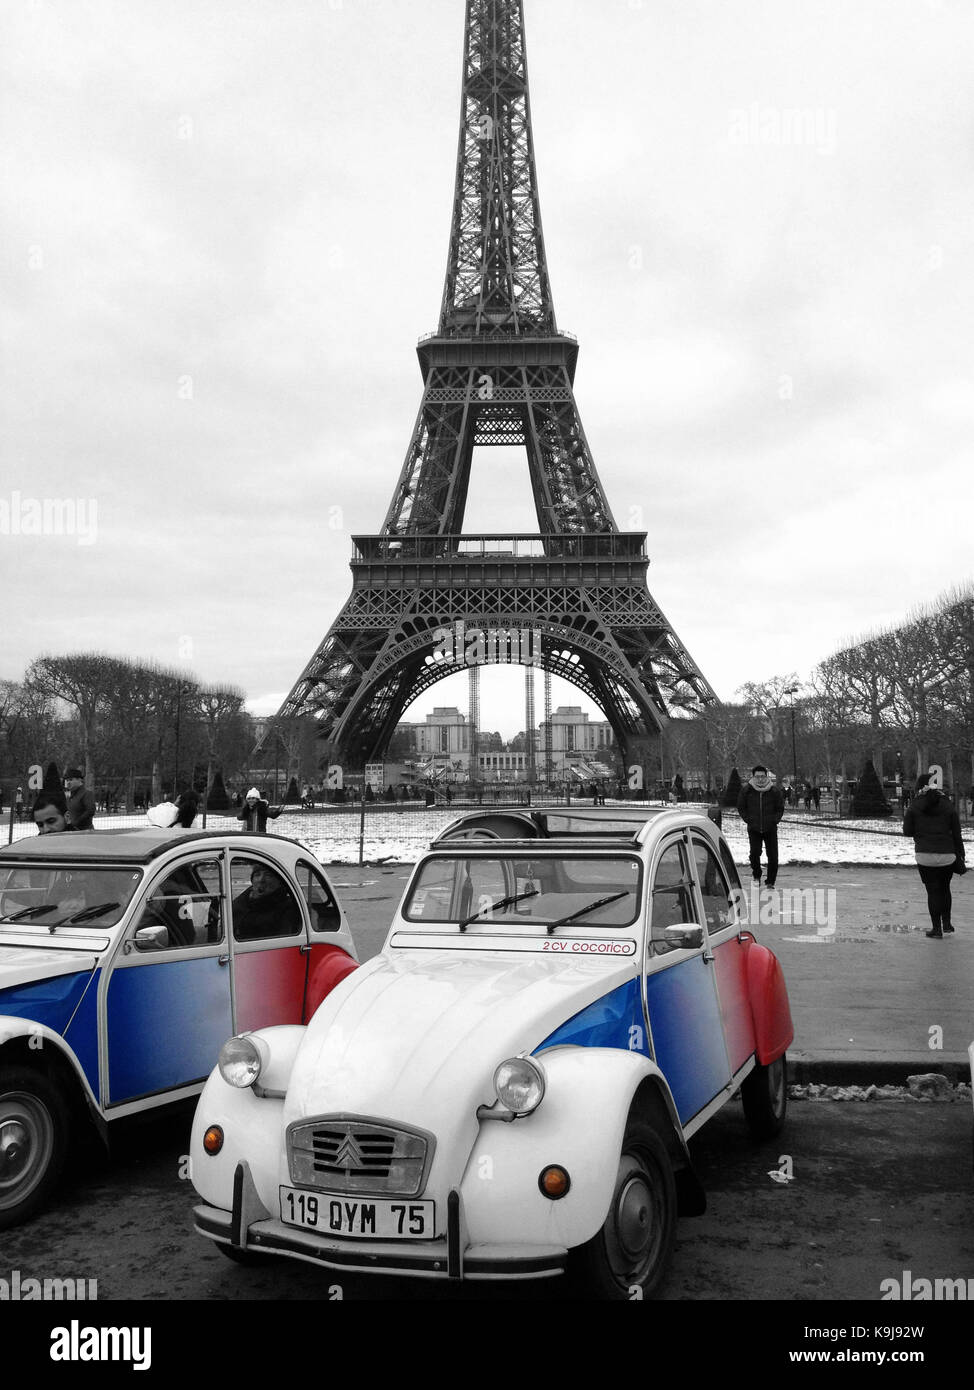 Paris, France - March 13, 2013: 2CV Cocorico Tricolor Cars. Two